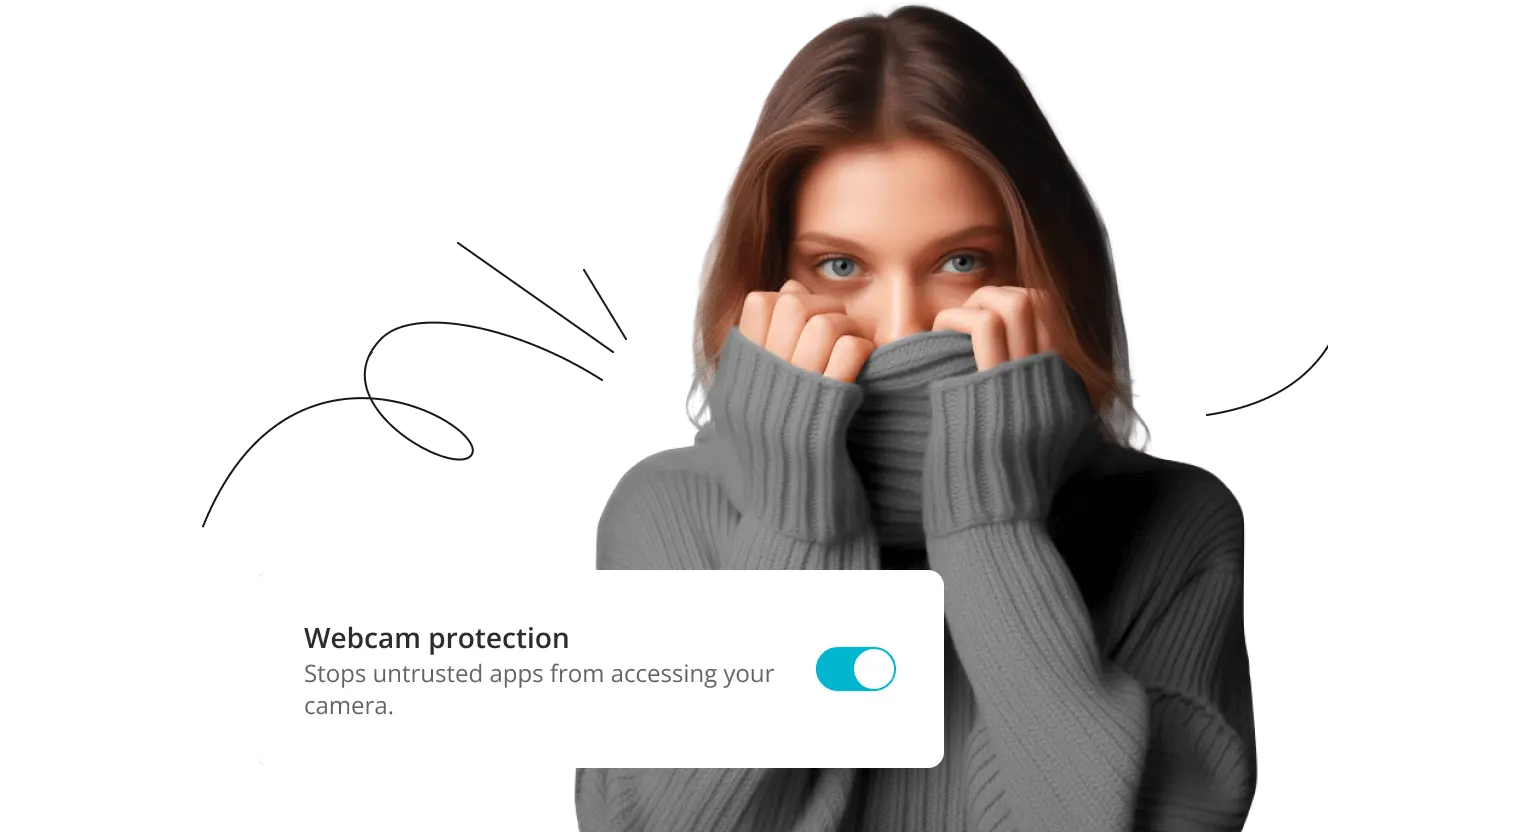 노란색 배경 화면에 회색 터틀넥 차림을 한 여성이 자신의 얼굴을 가리고 있습니다. Webcam 보호 기능 토글 버튼이 켜져 있습니다.